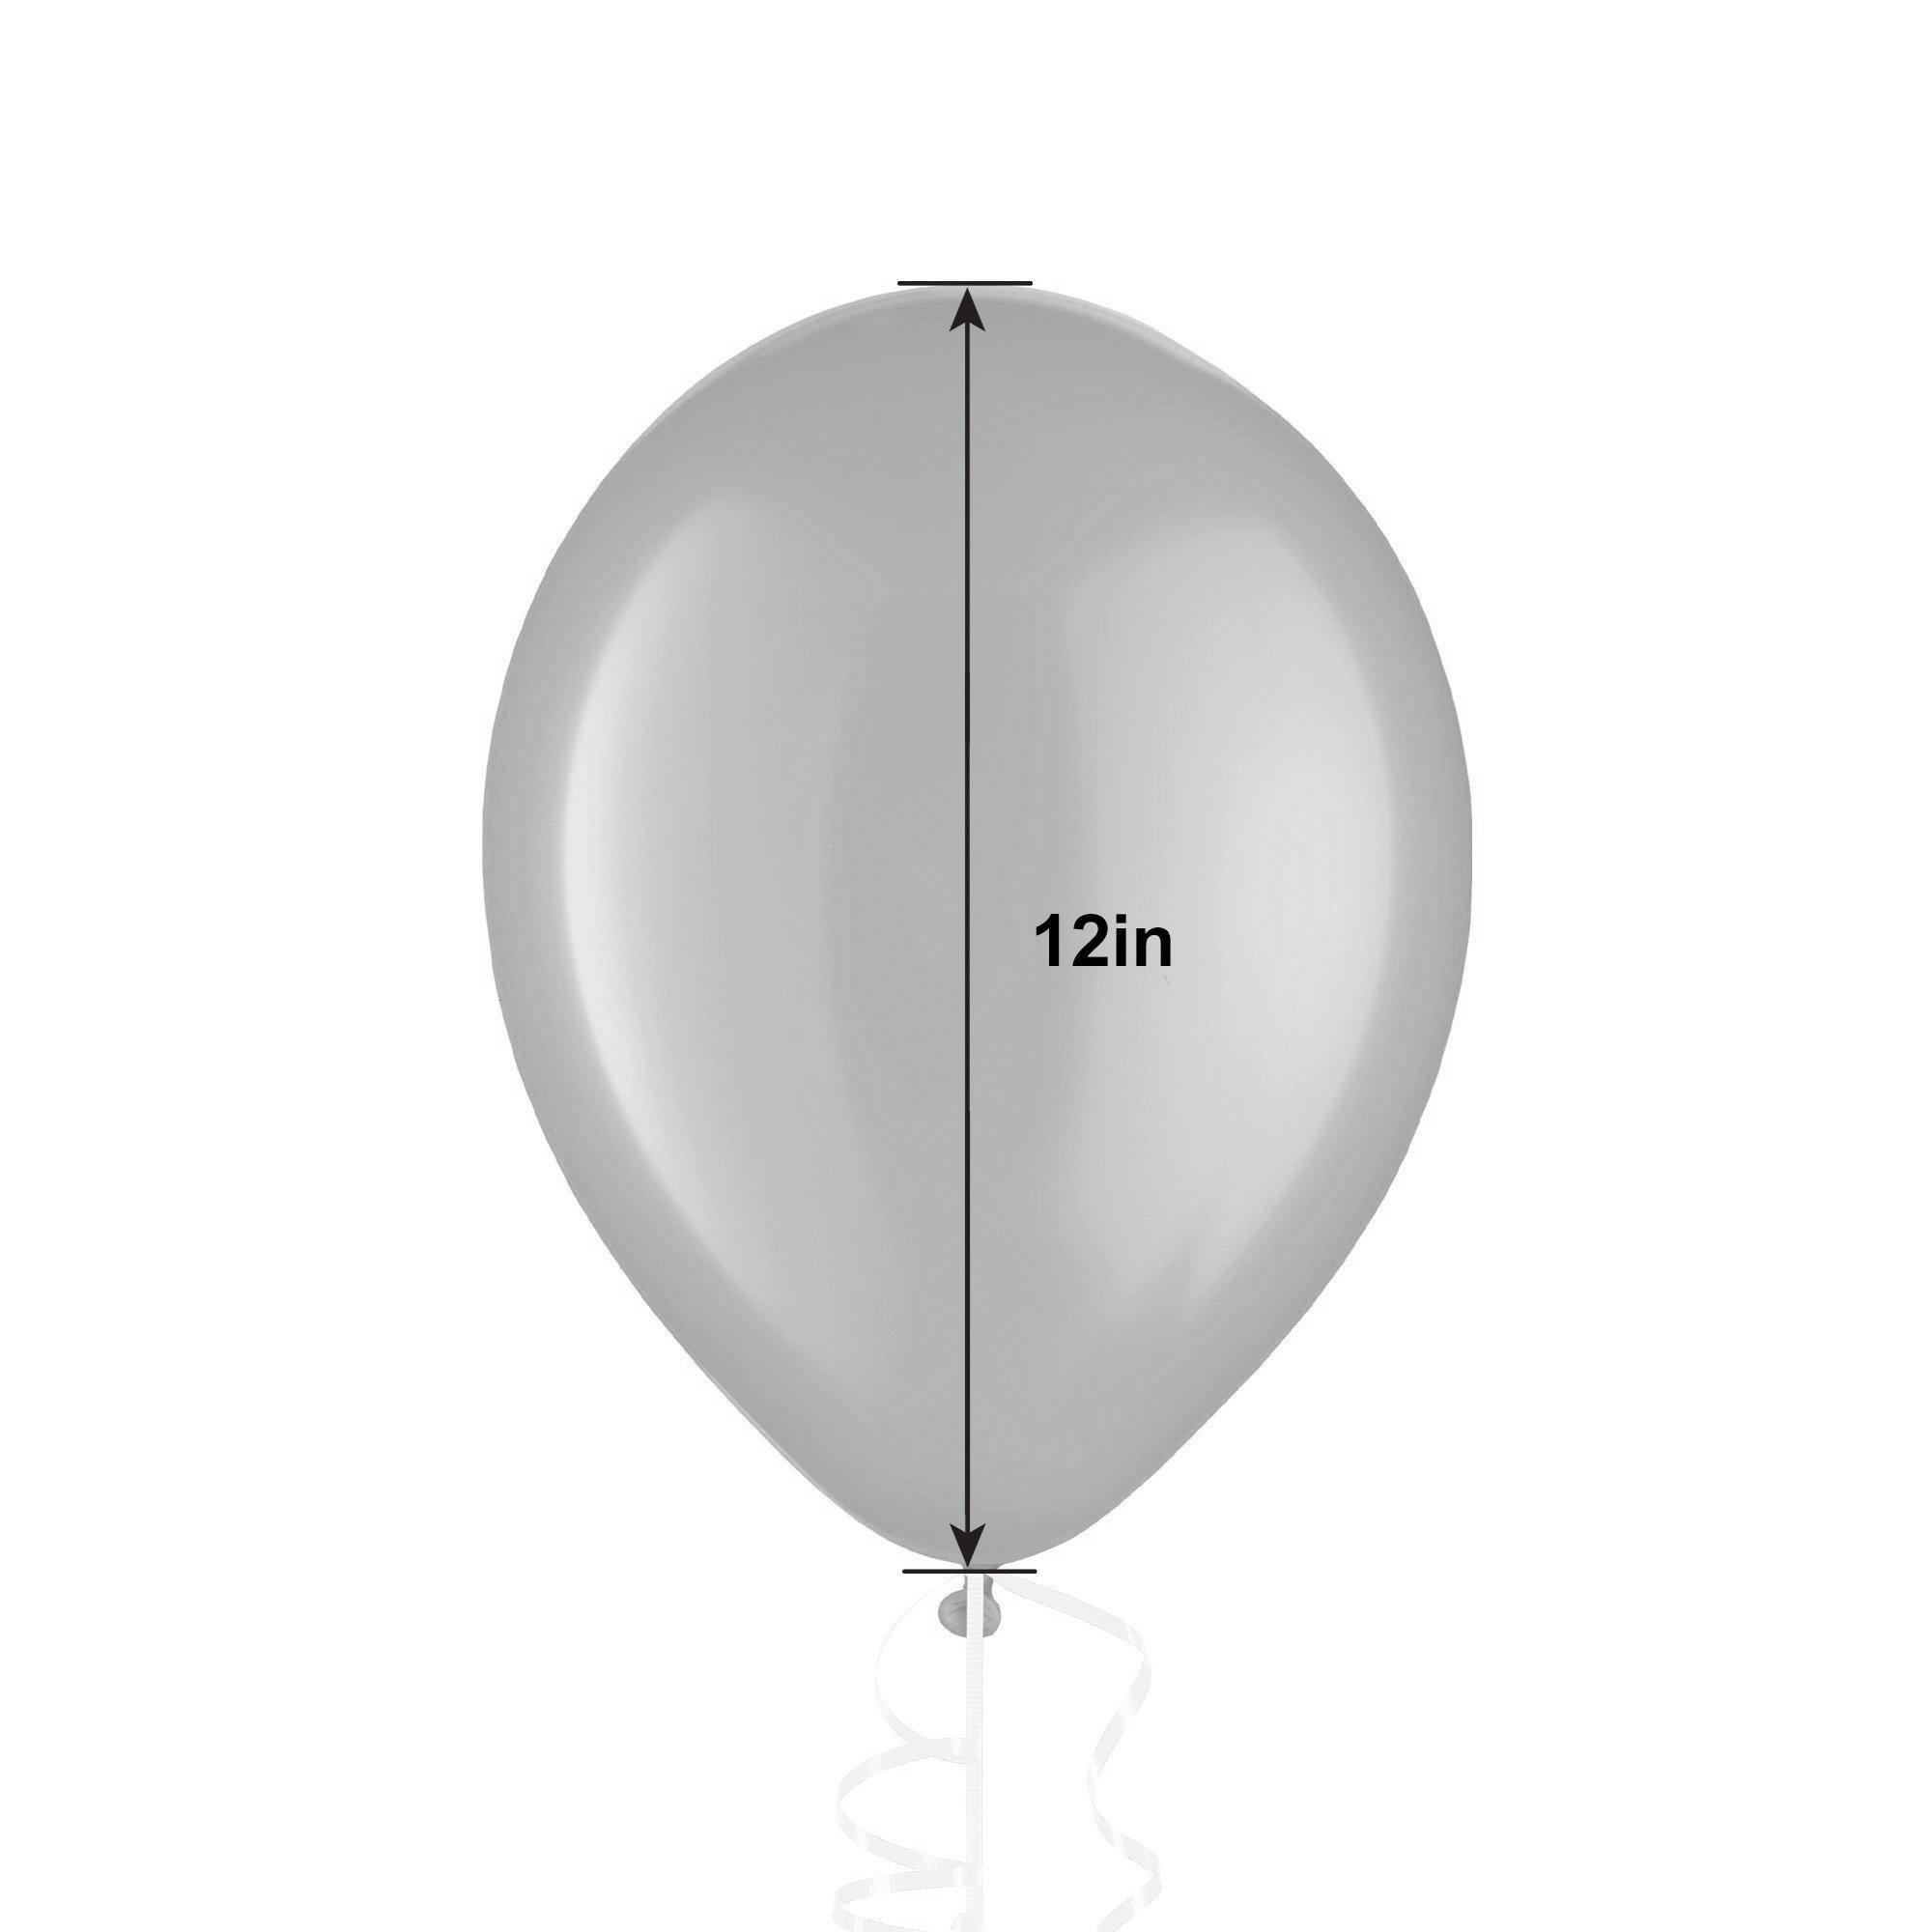 1ct, 12in, Orange Pearl Balloon